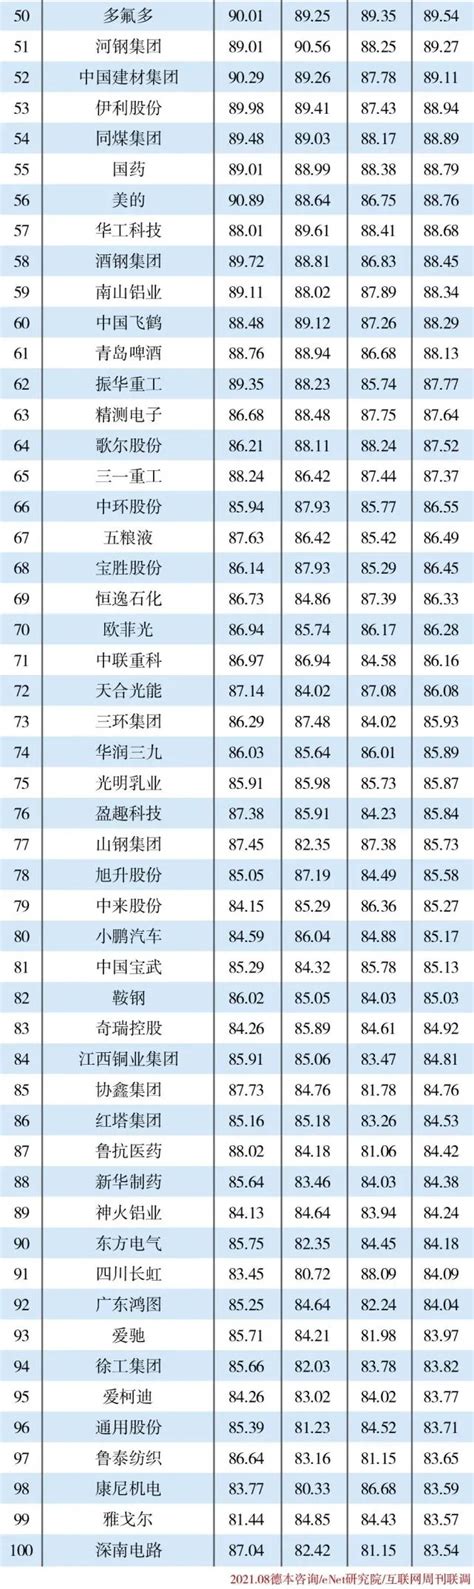 2022年2月中国汽车厂商零售销量排行榜TOP10（附榜单）_汽车_第一排行榜